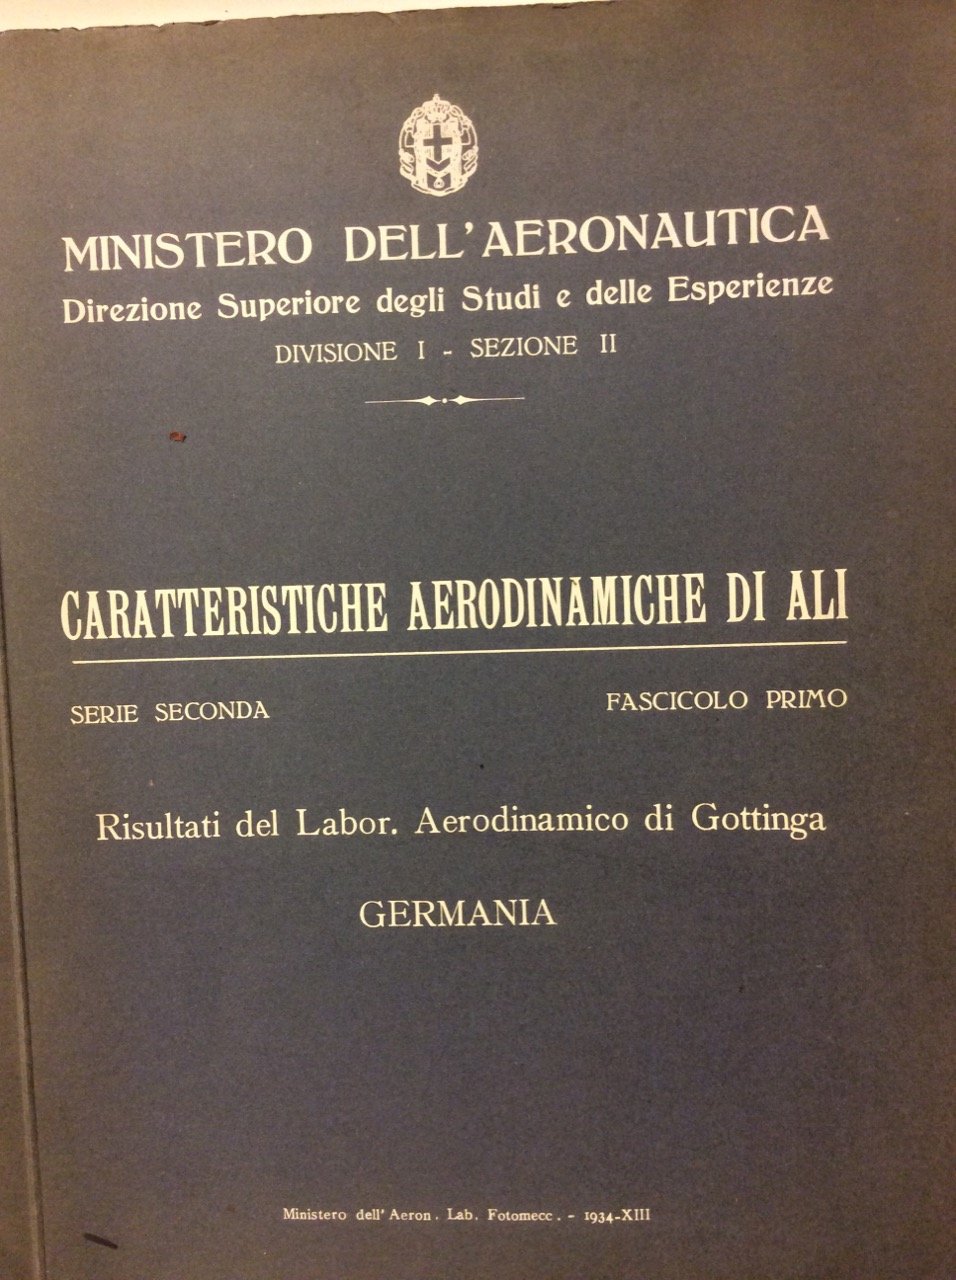 CARATTERISTICHE AERODINAMICHE DI ALI. - Serie Seconda - Fascicolo Primo.